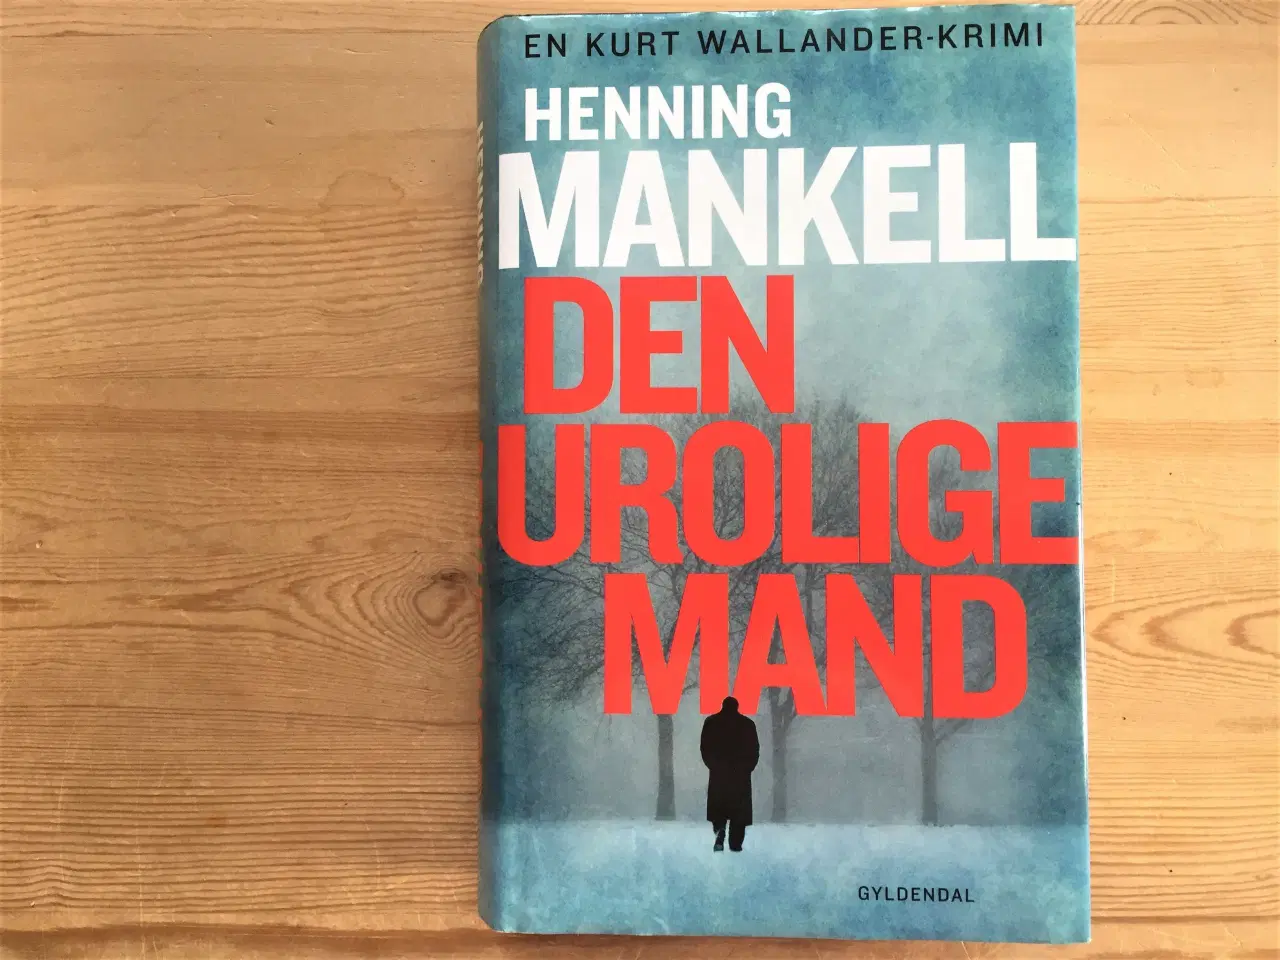 Billede 3 - TILBUD: 9 romaner af Henning Mankell